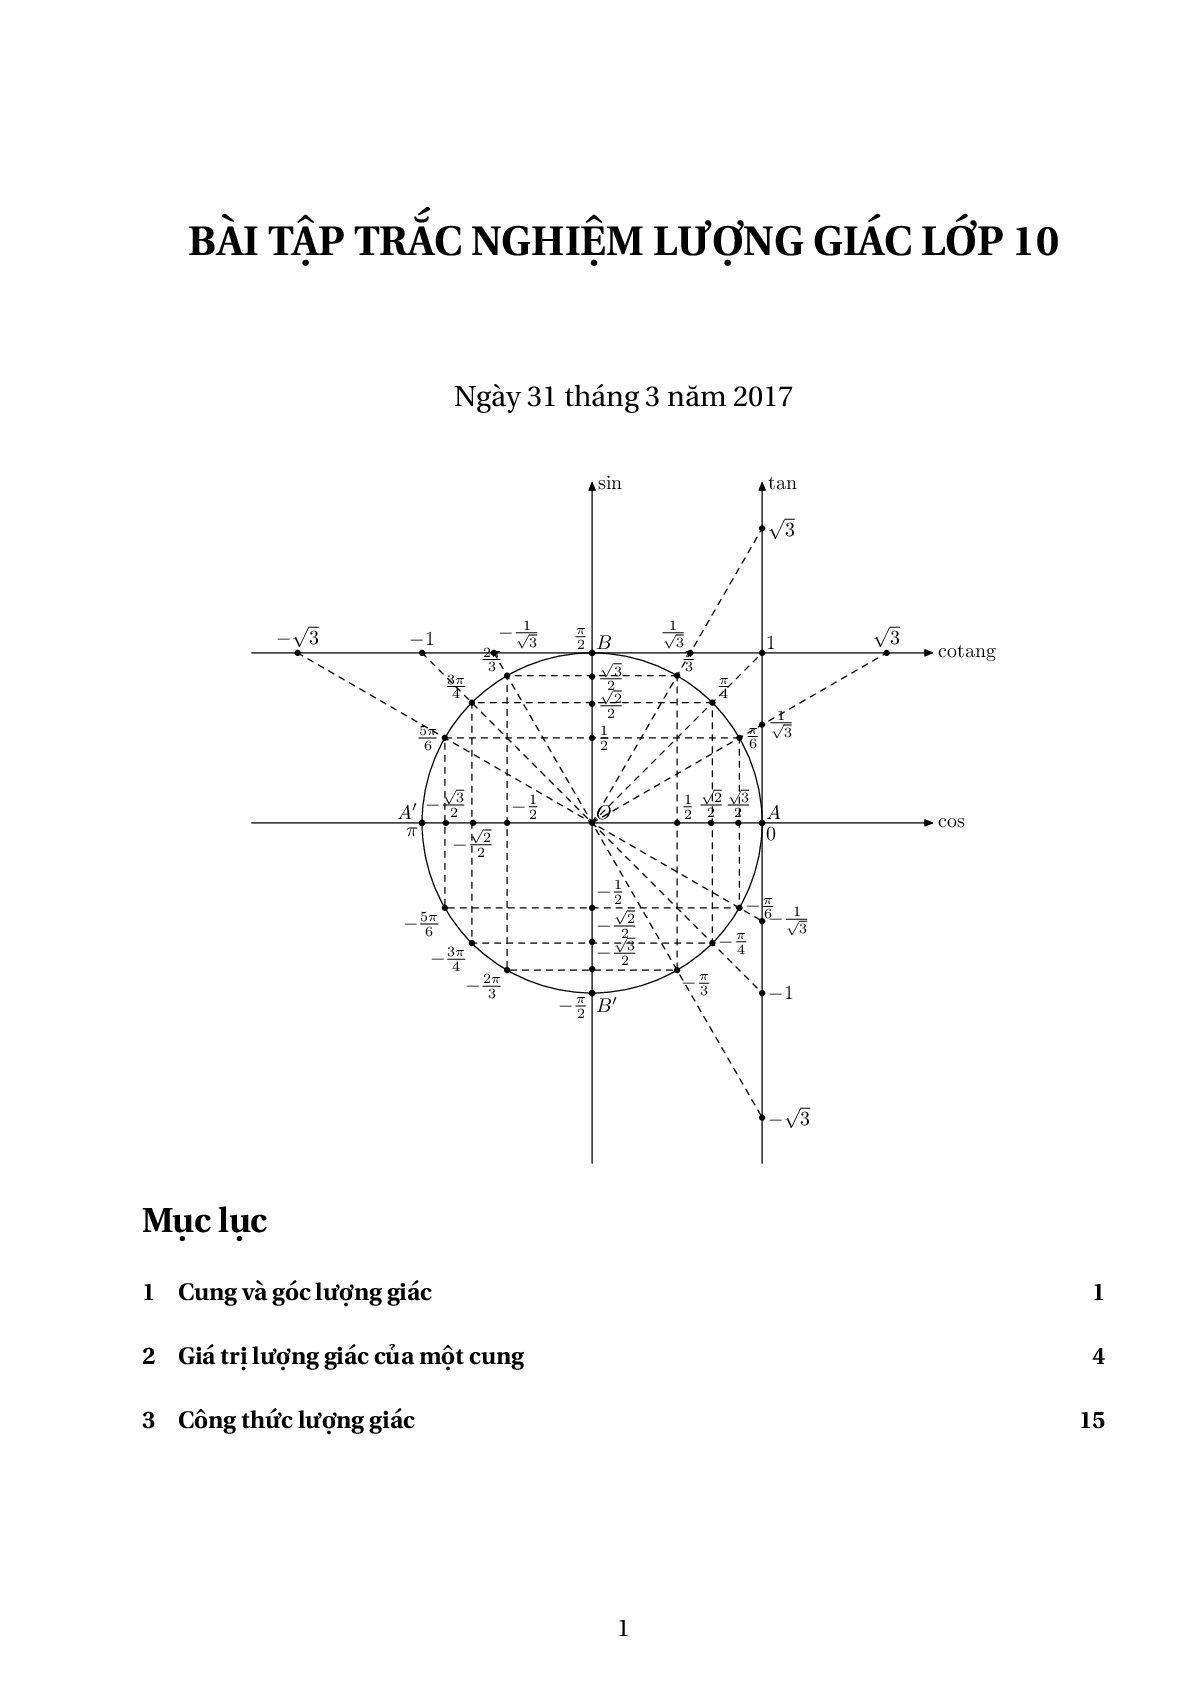 315 bài tập trắc nghiệm cung và góc lượng giác, công thức lượng giác (trang 1)